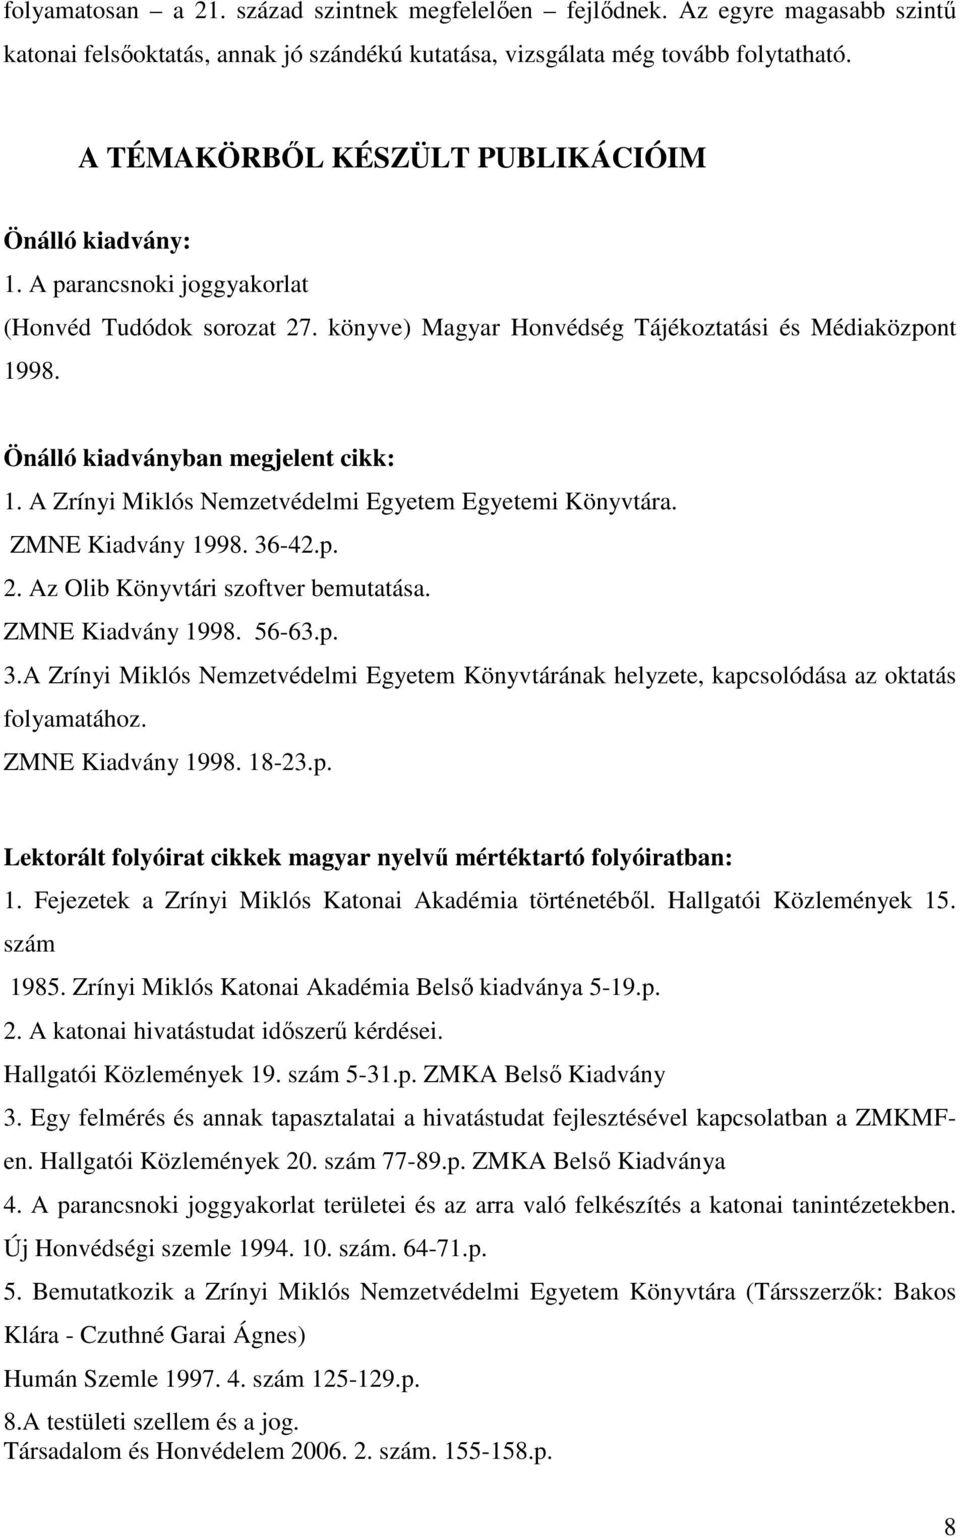 Önálló kiadványban megjelent cikk: 1. A Zrínyi Miklós Nemzetvédelmi Egyetem Egyetemi Könyvtára. ZMNE Kiadvány 1998. 36